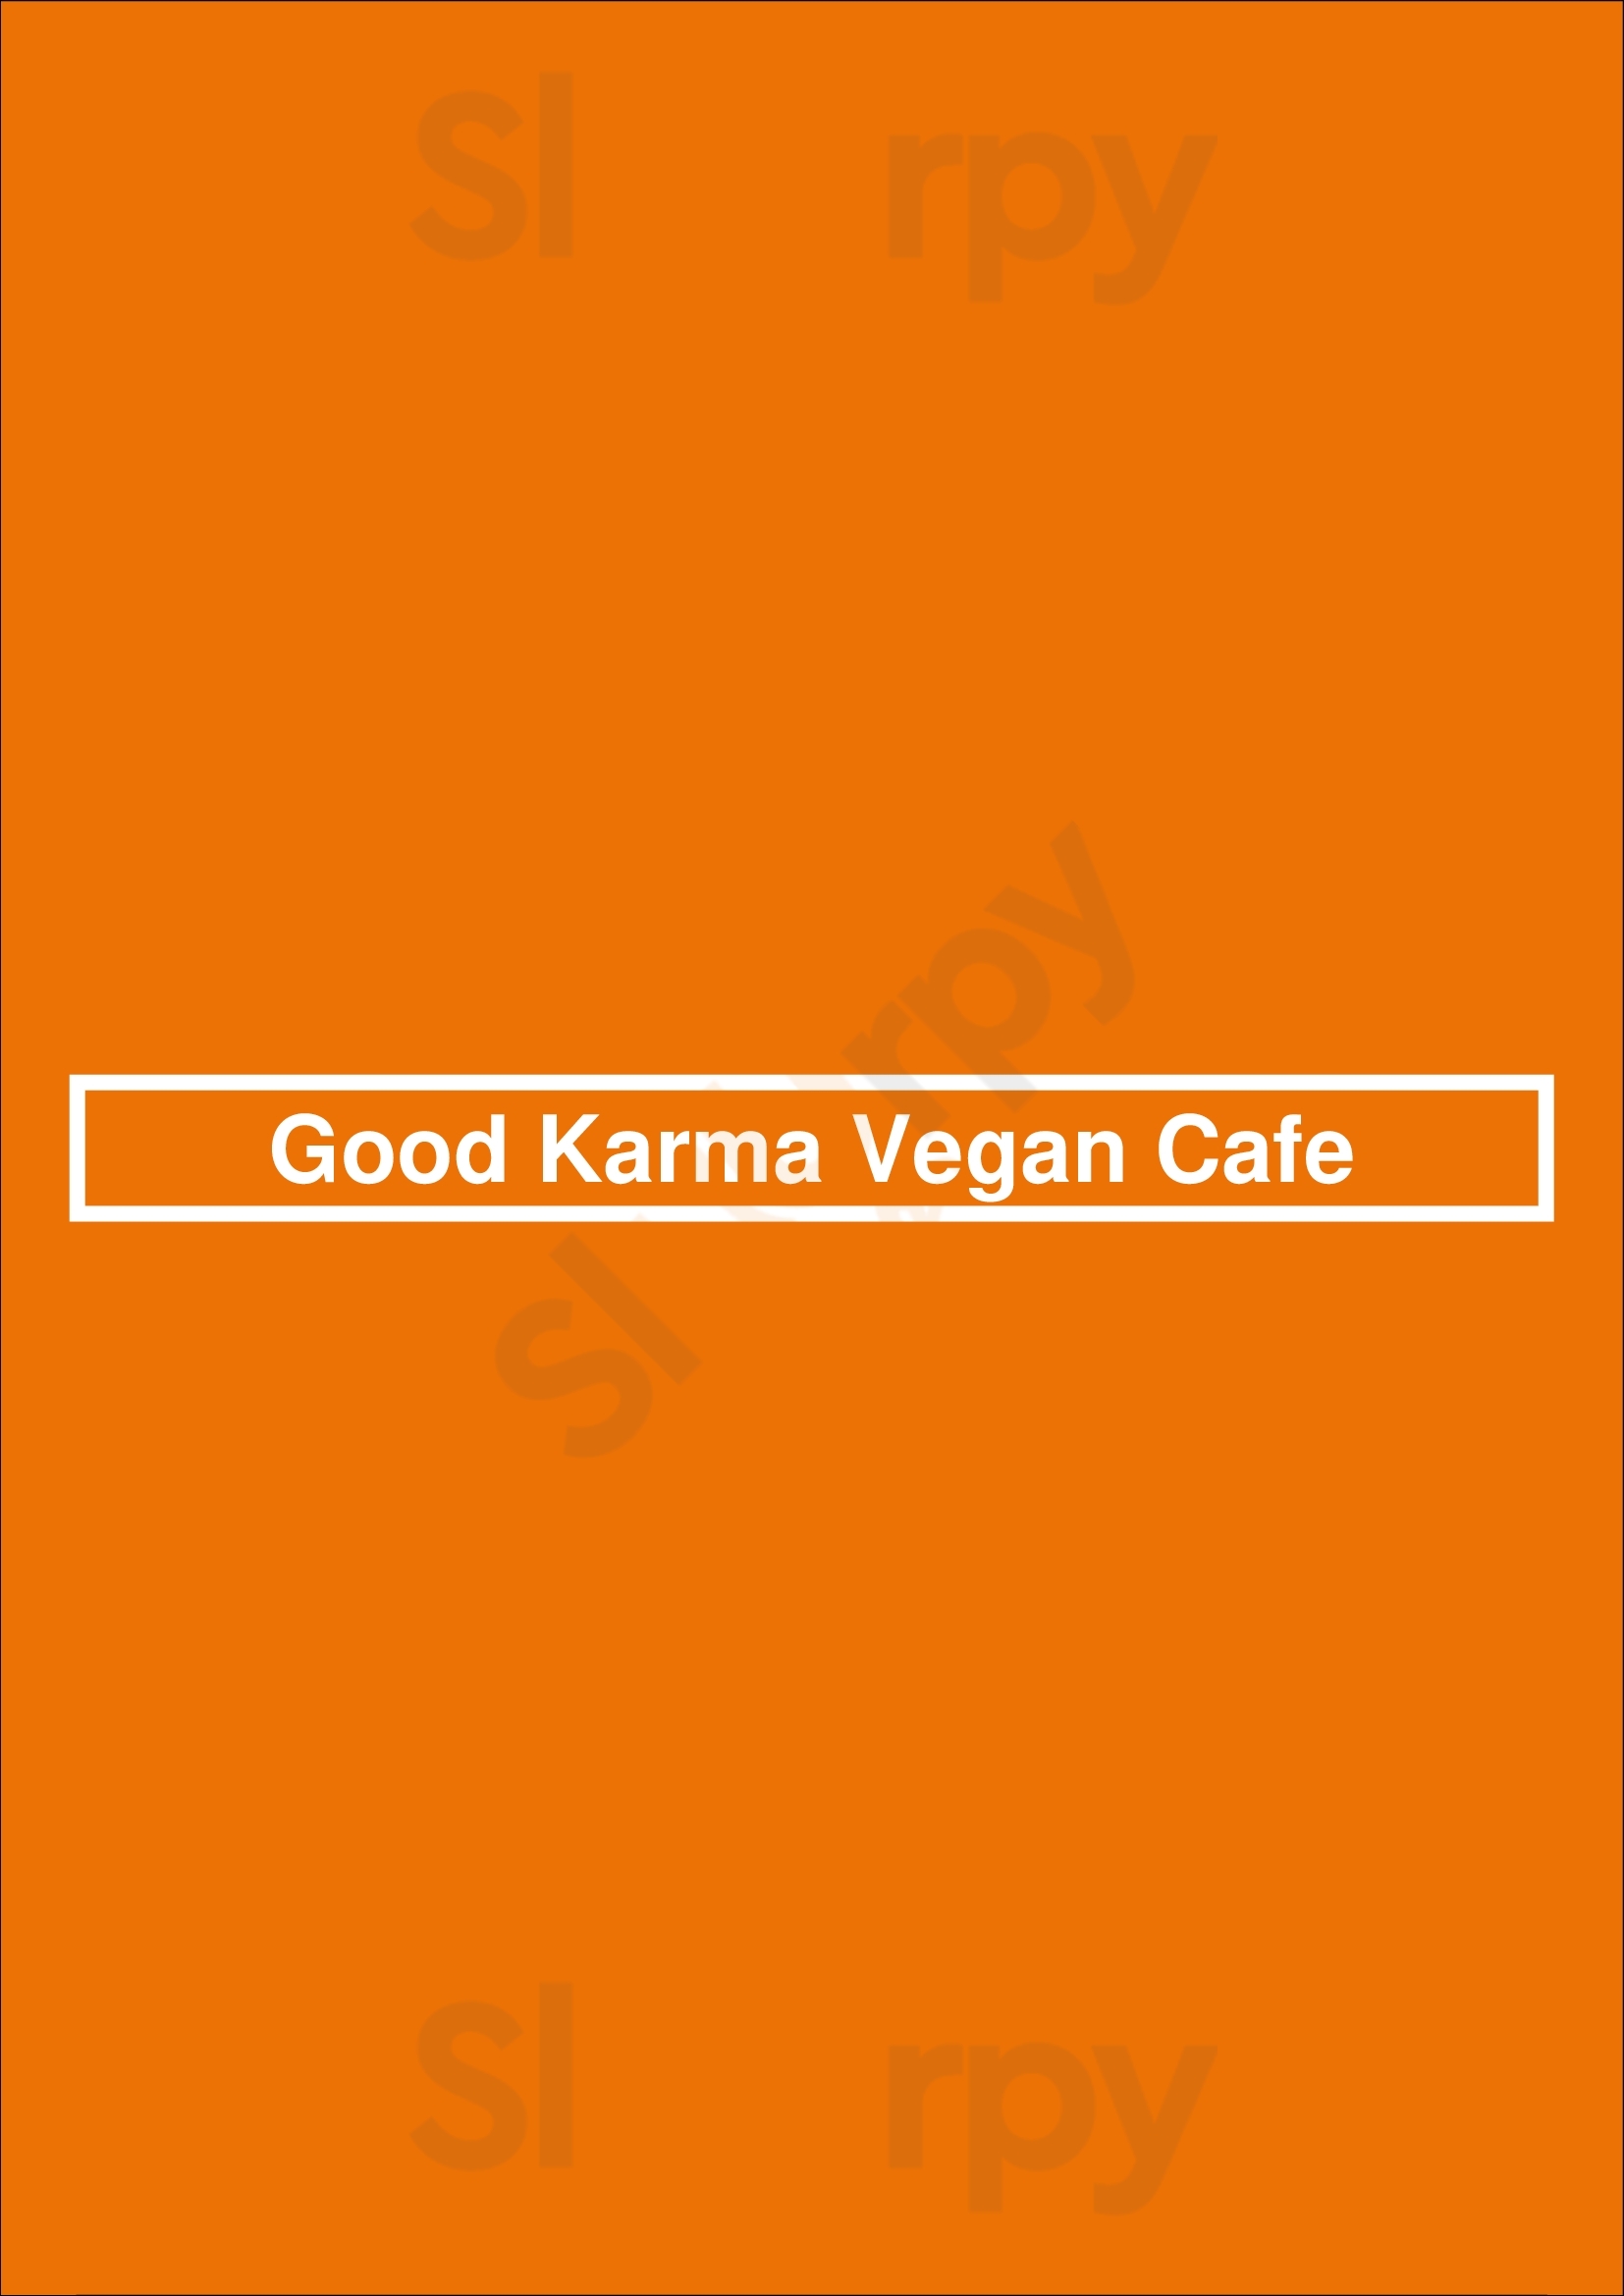 Good Karma Vegan Cafe San Jose Menu - 1